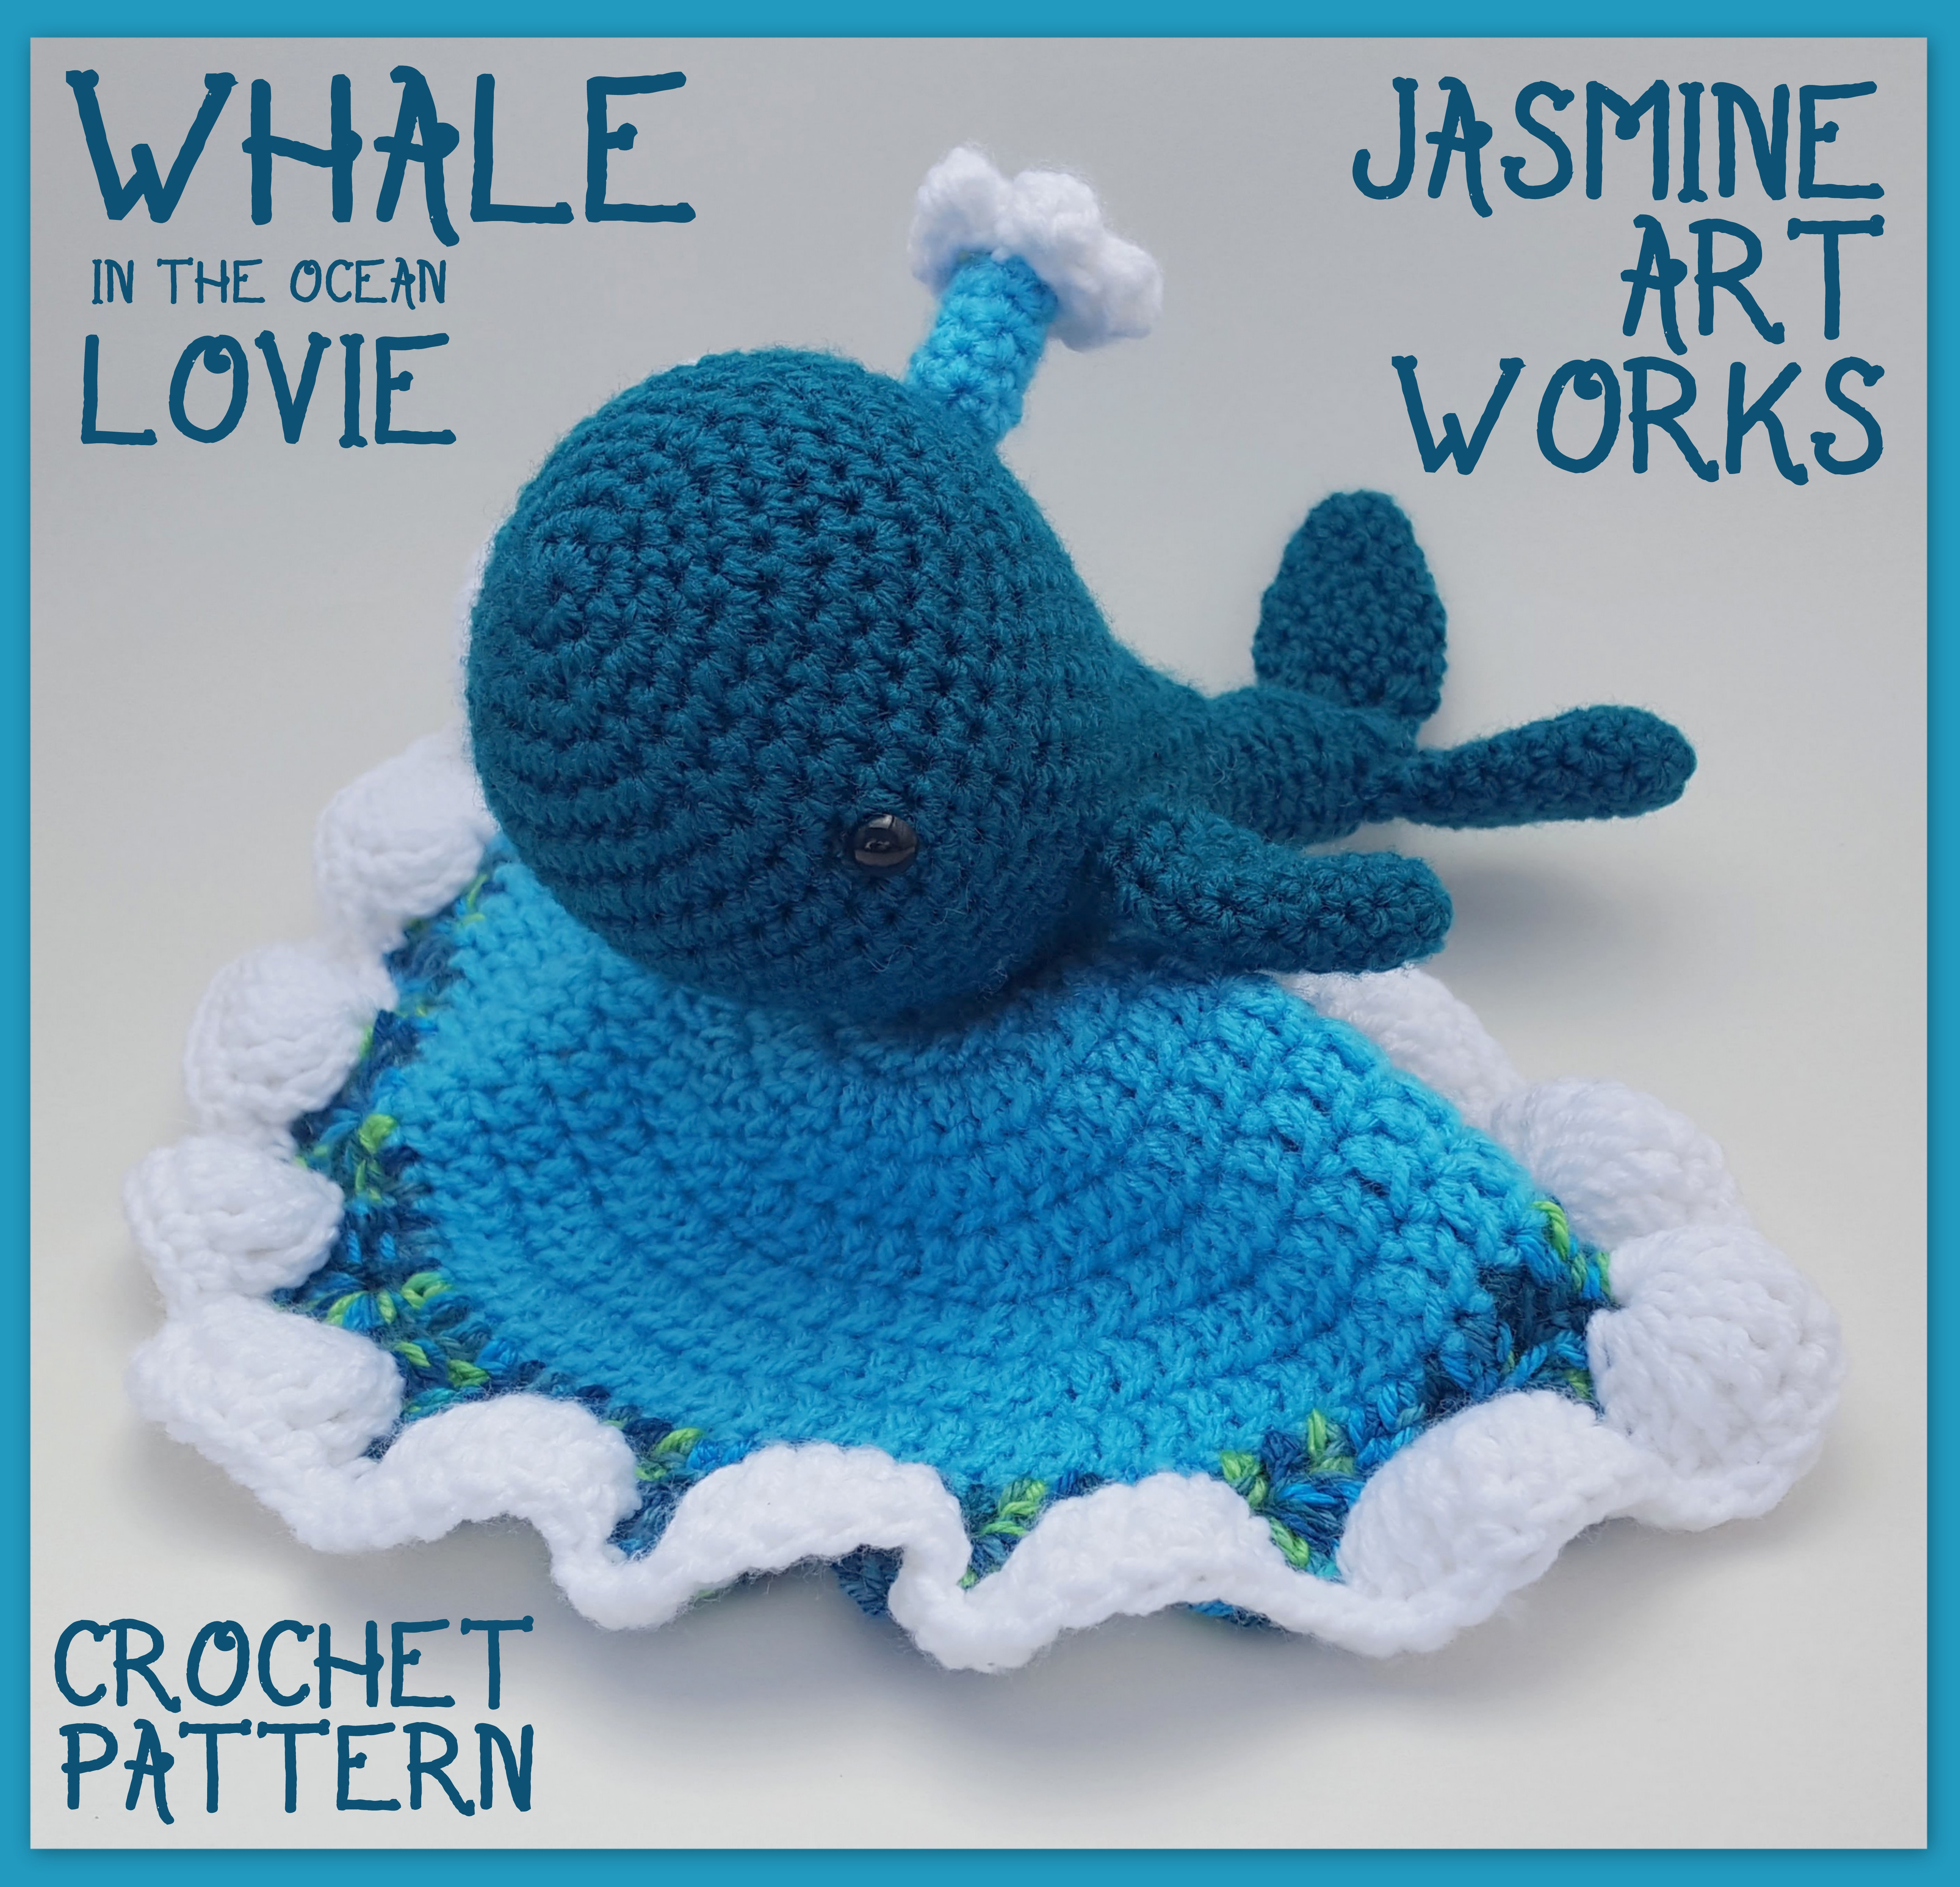 Crochet Whale Pattern Whale Lovie Crochet Pattern Jasmine Art Works